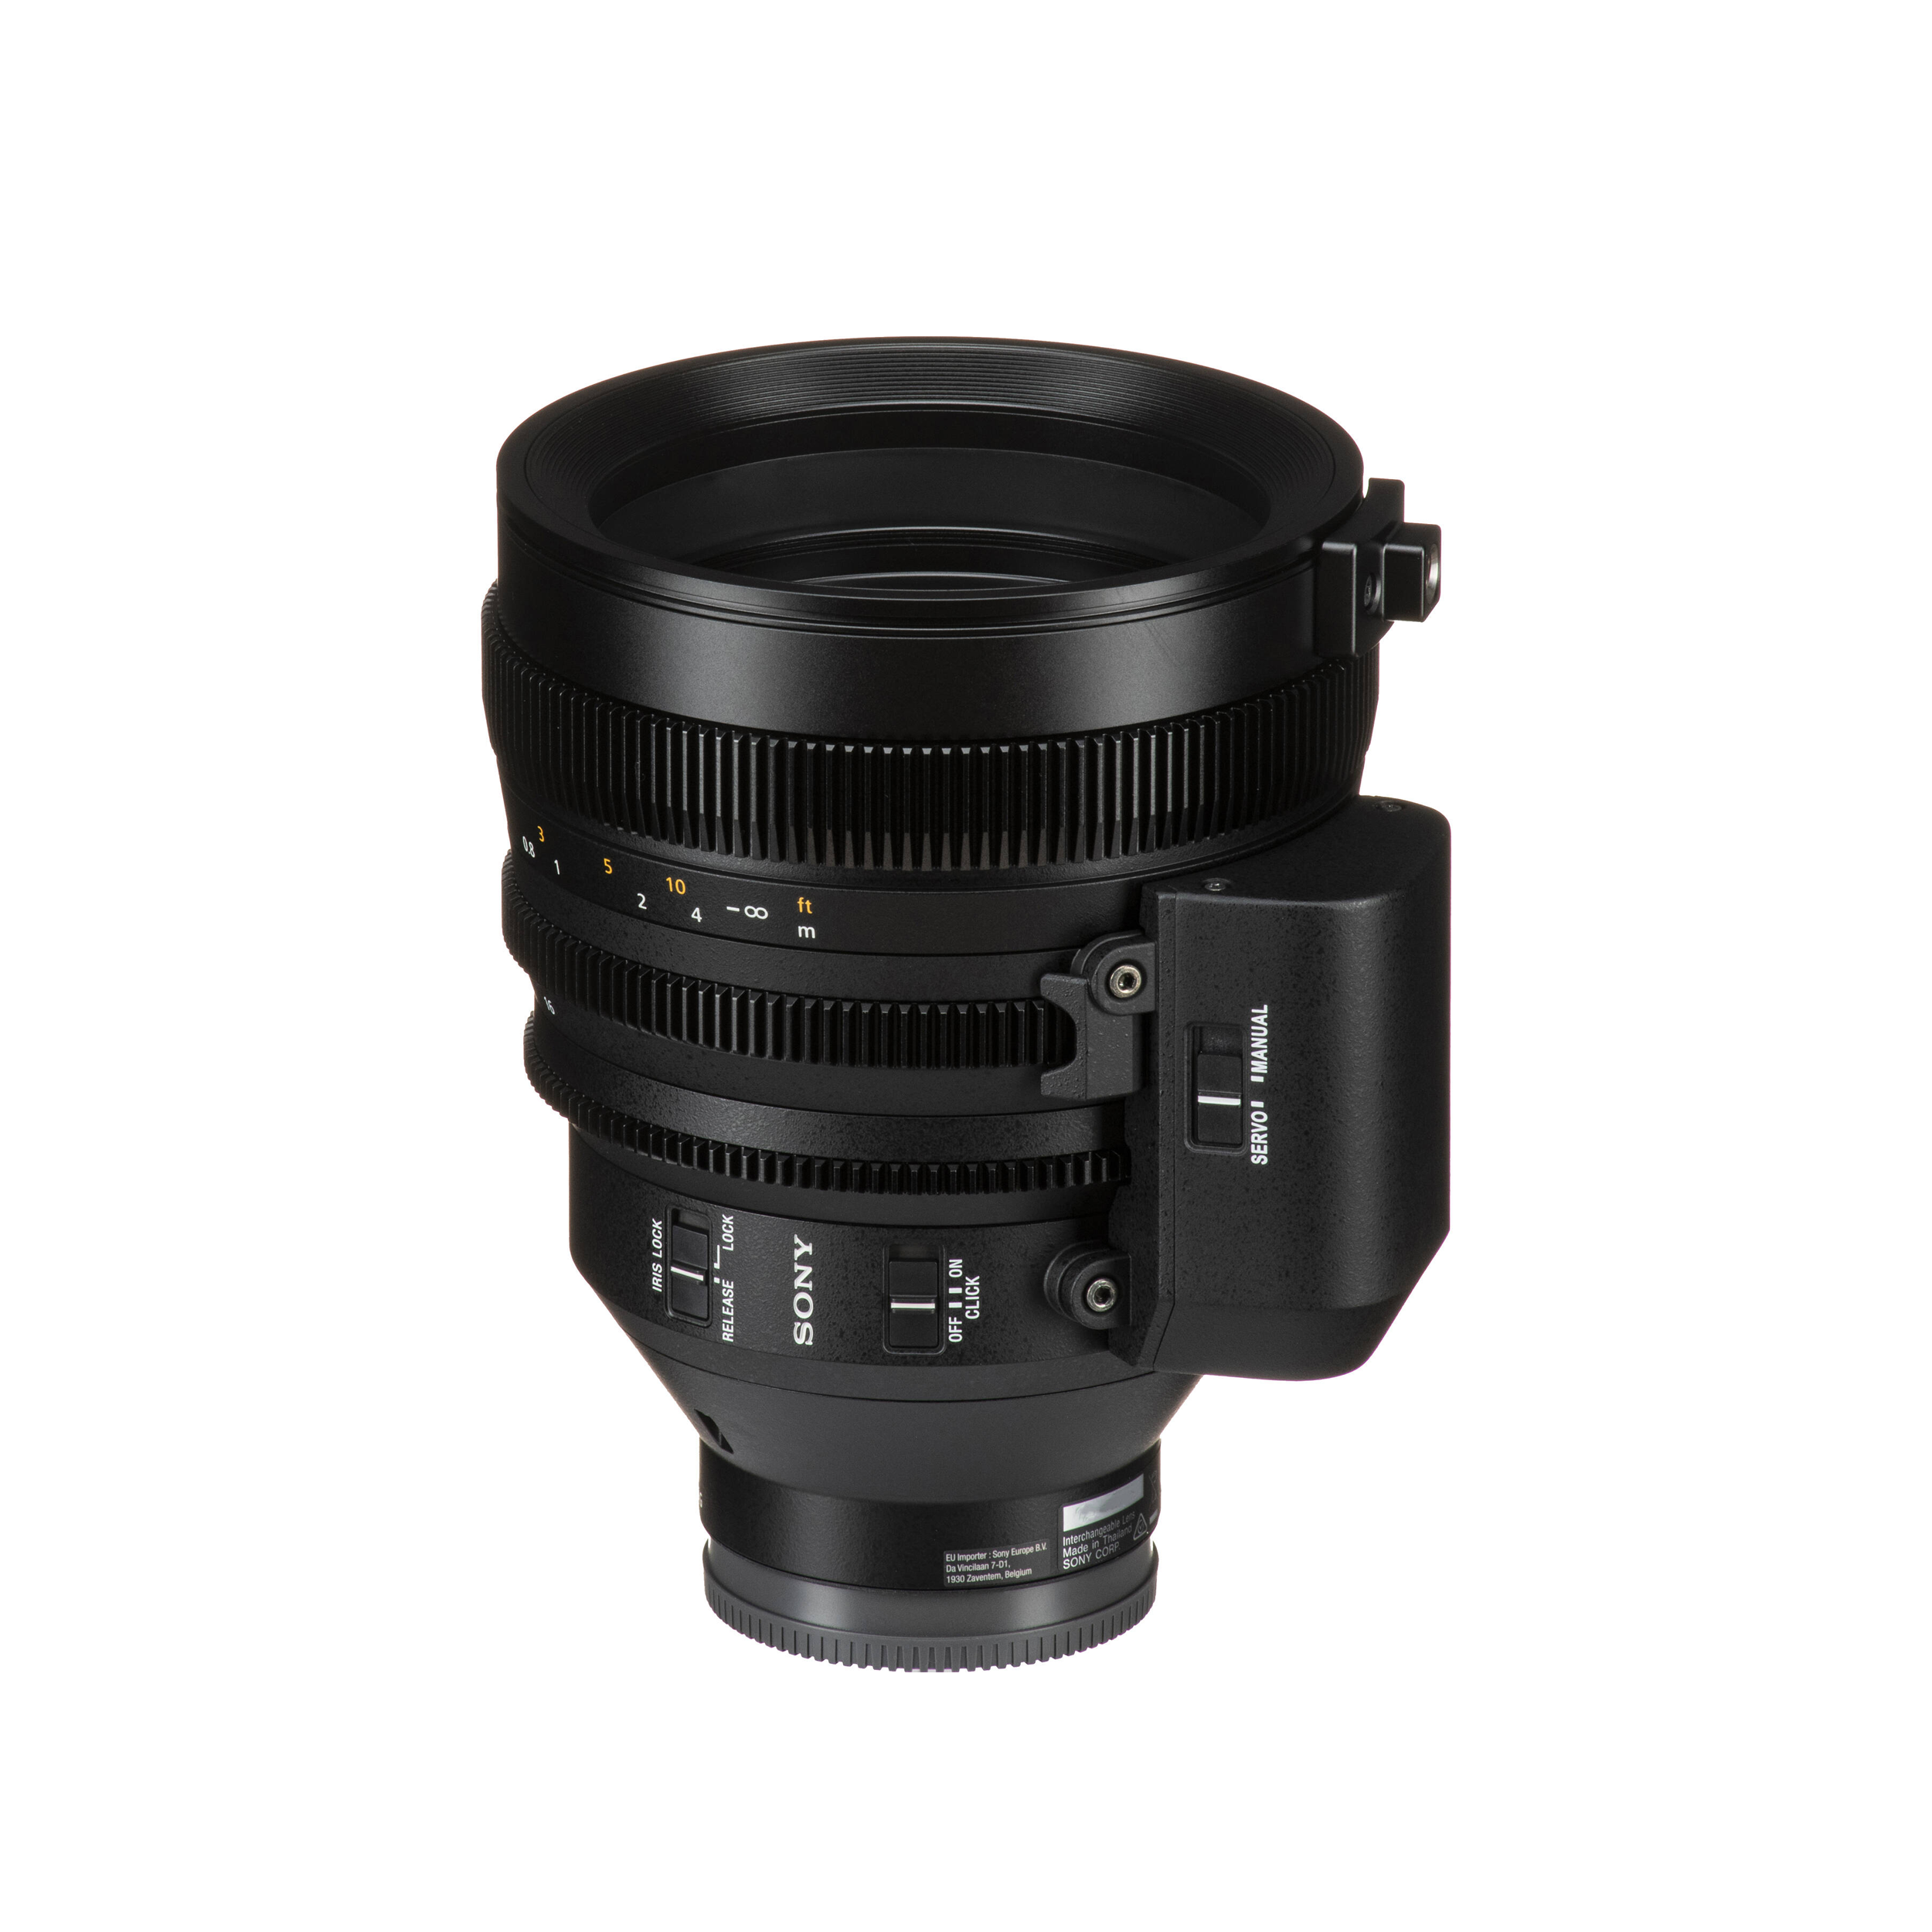 Sony Fe C 16-35 mm T3.1 g Lens pour Sony e-monnt